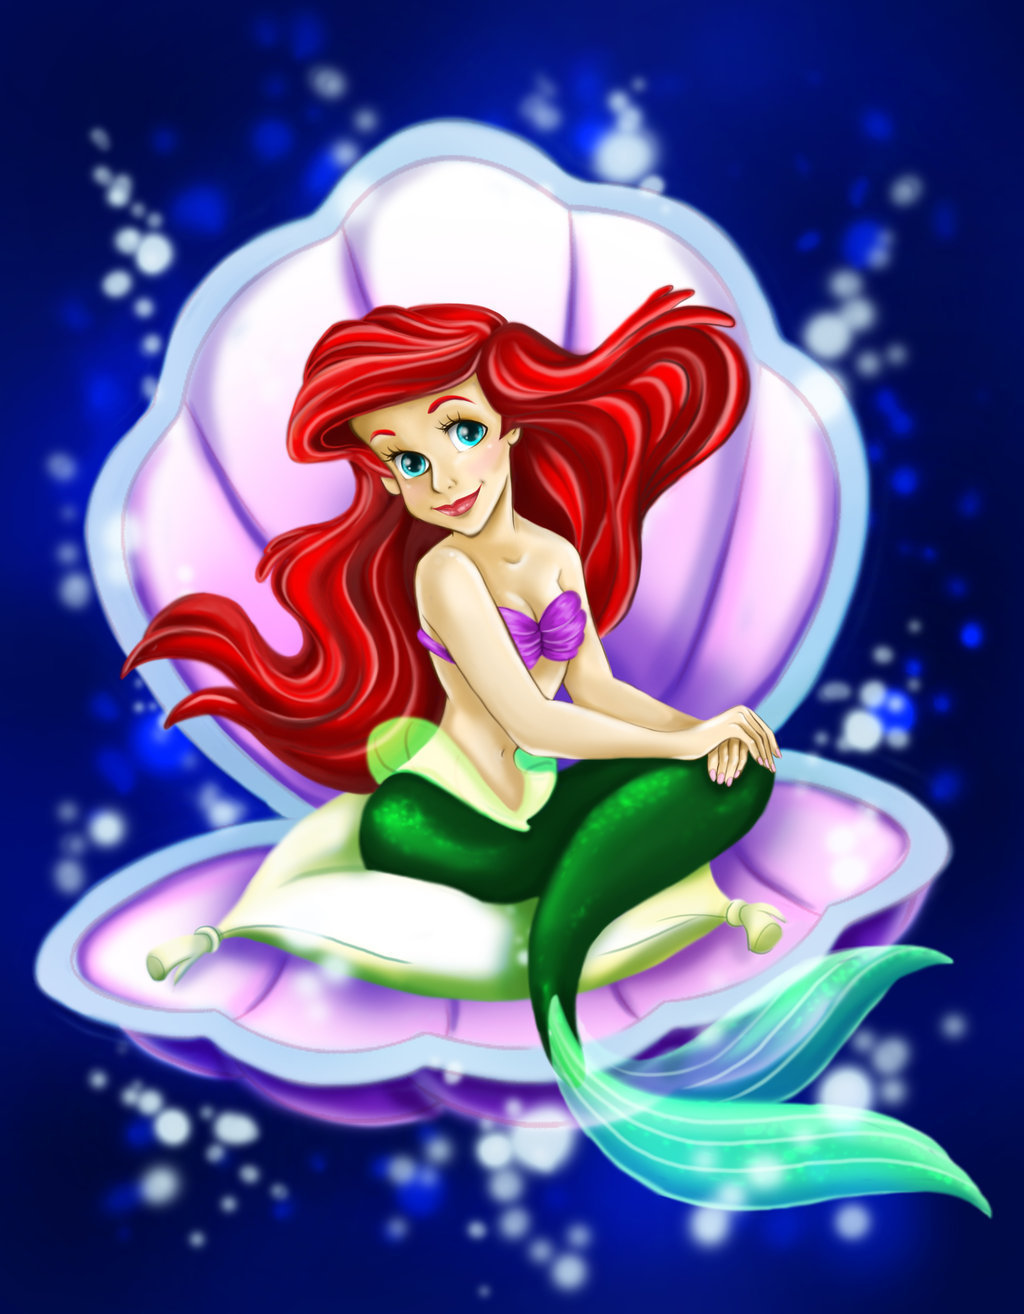 The Little Mermaid Ariel - Little Mermaid In Shell - HD Wallpaper 